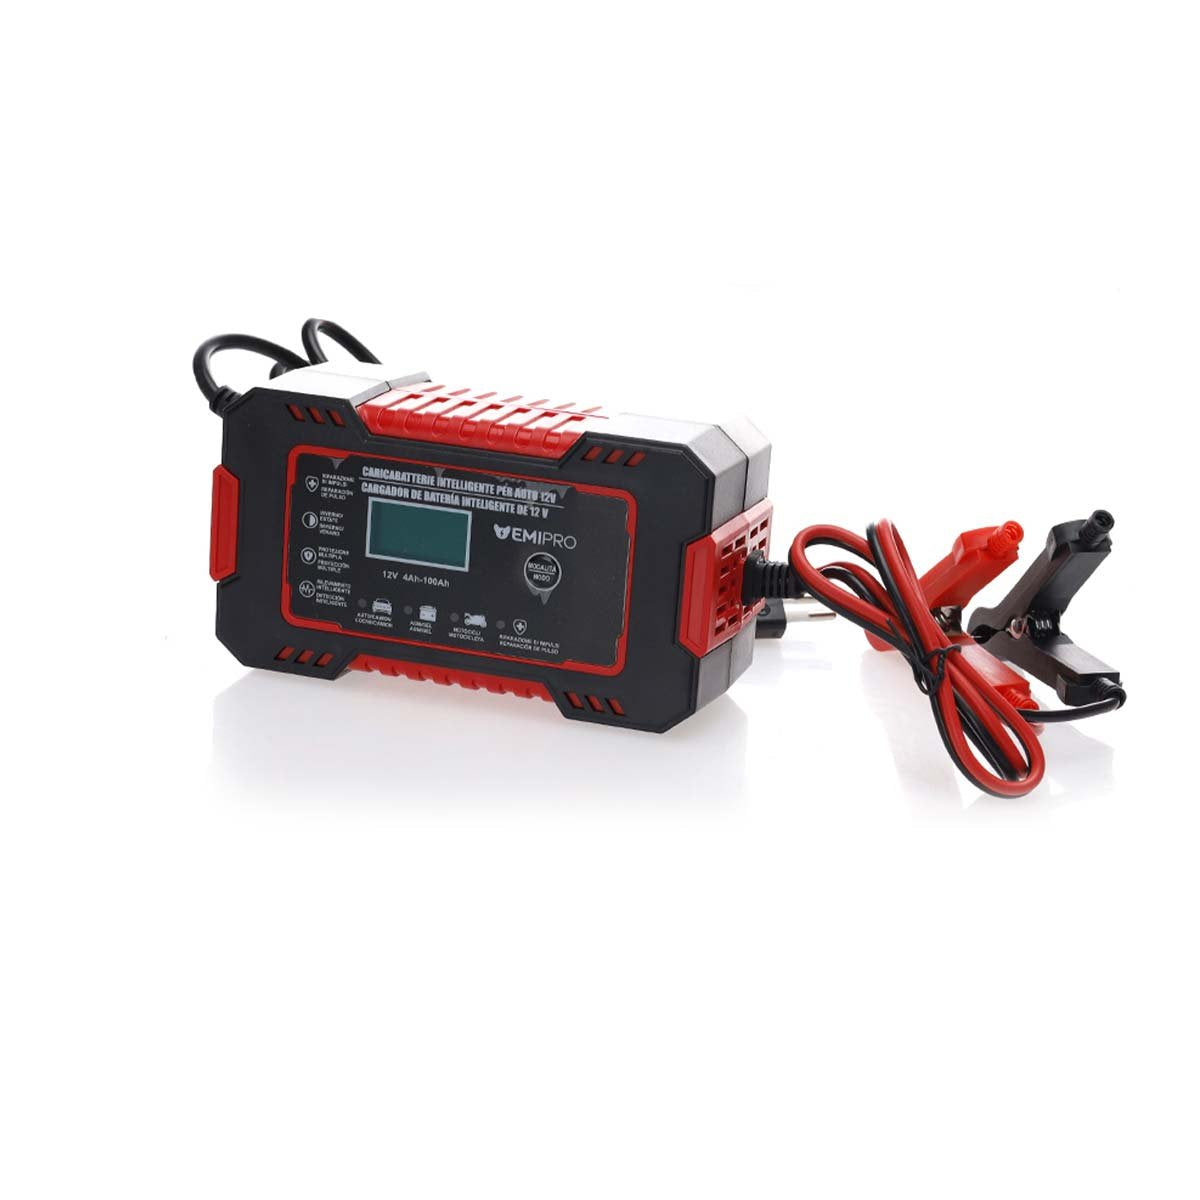 Caricabatterie per Auto 12V 6A Ricarica Batteria Auto Moto 12V 4Ah-100Ah Schermo LCD